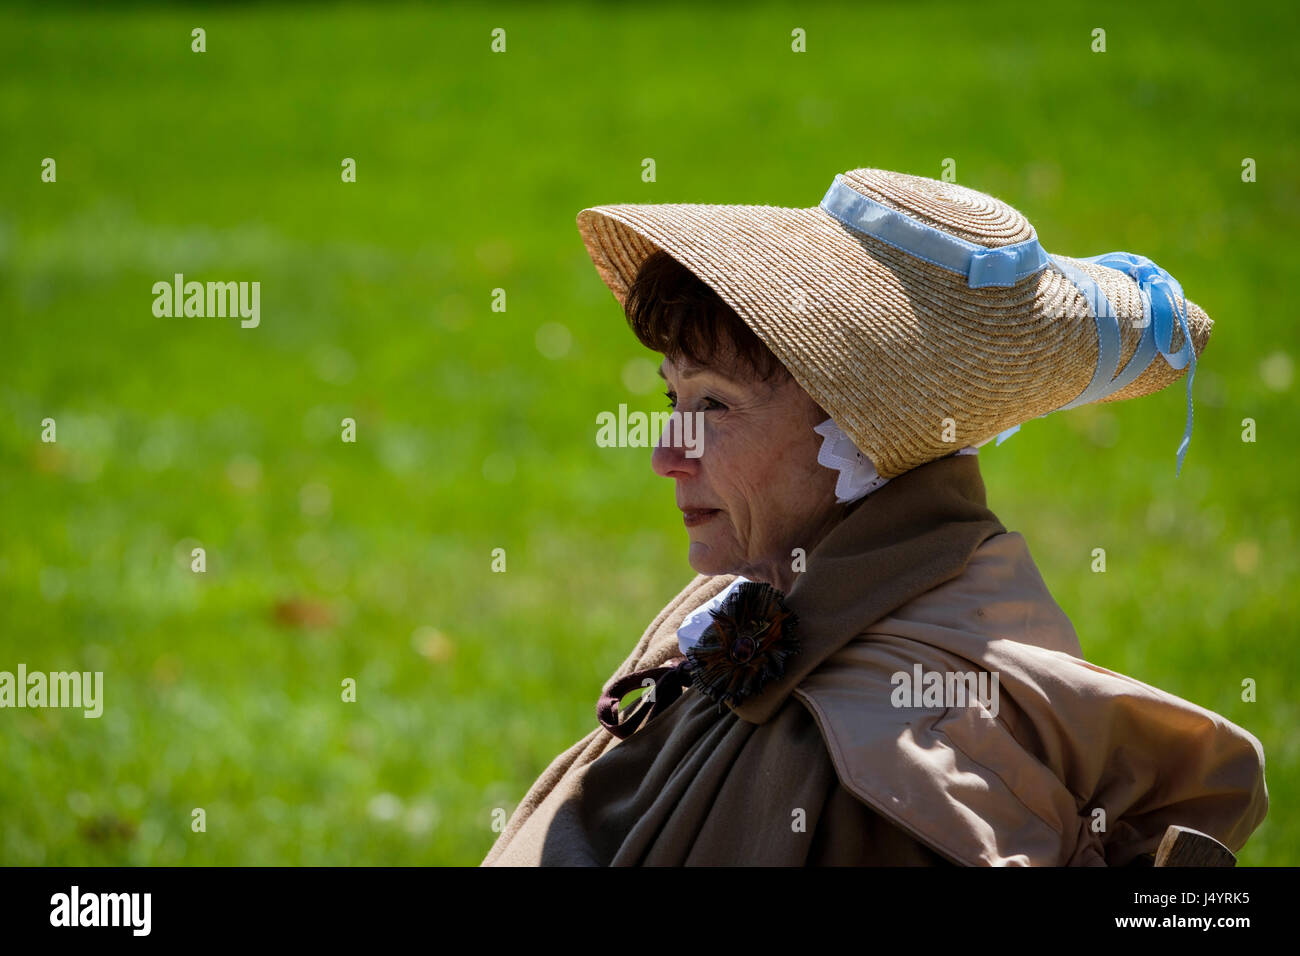 Bataille de Longwoods de reconstitution 1812, femme d'âge moyen portant un chapeau bergère, chapeau de paille avec ruban bleu, regard contemplatif, de l'Ontario, Canada. Banque D'Images